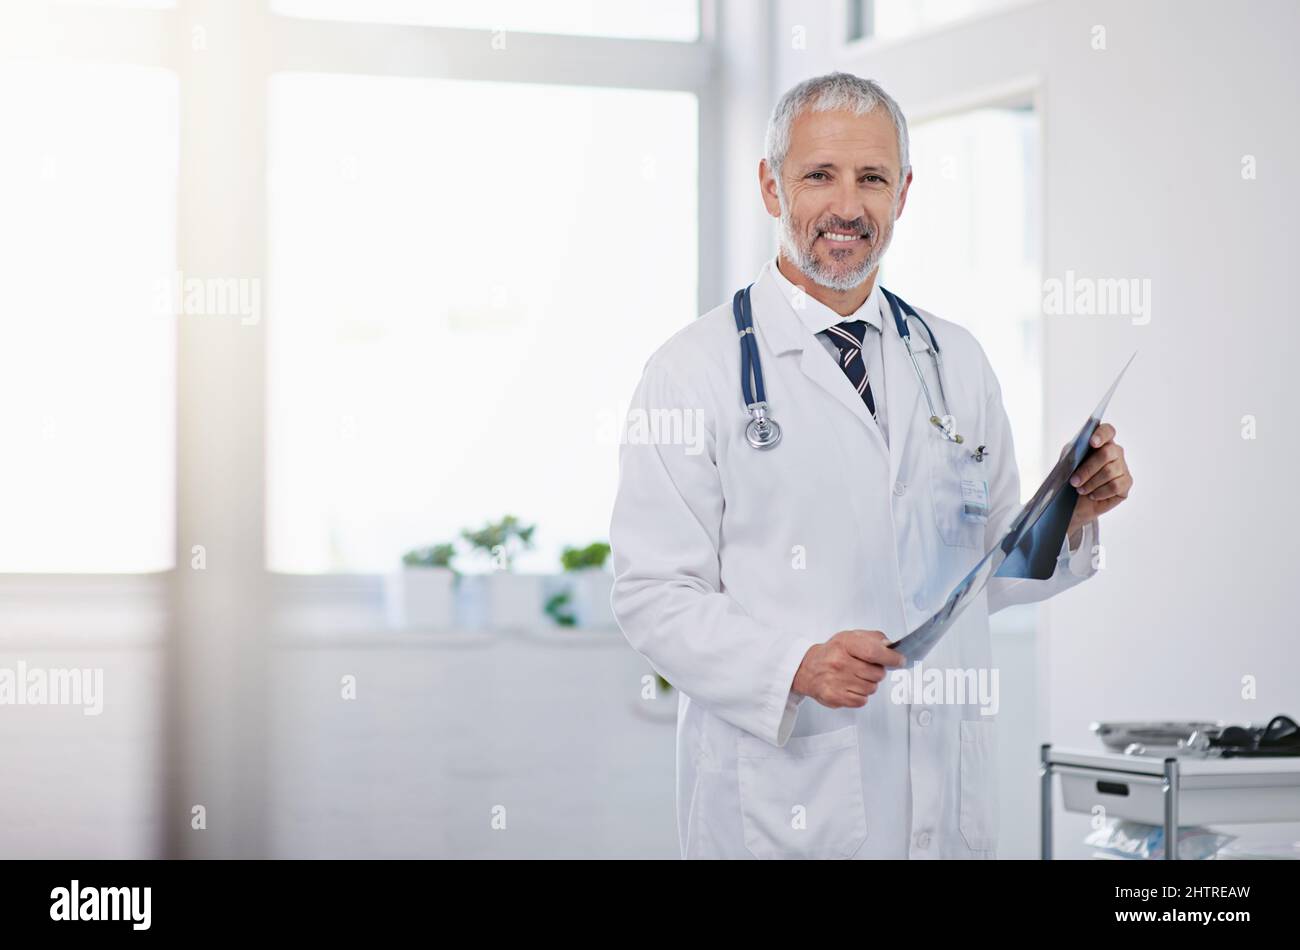 Impegno per l'eccellenza nel settore sanitario. Ritratto di un medico maturo che tiene una radiografia in un ospedale. Foto Stock